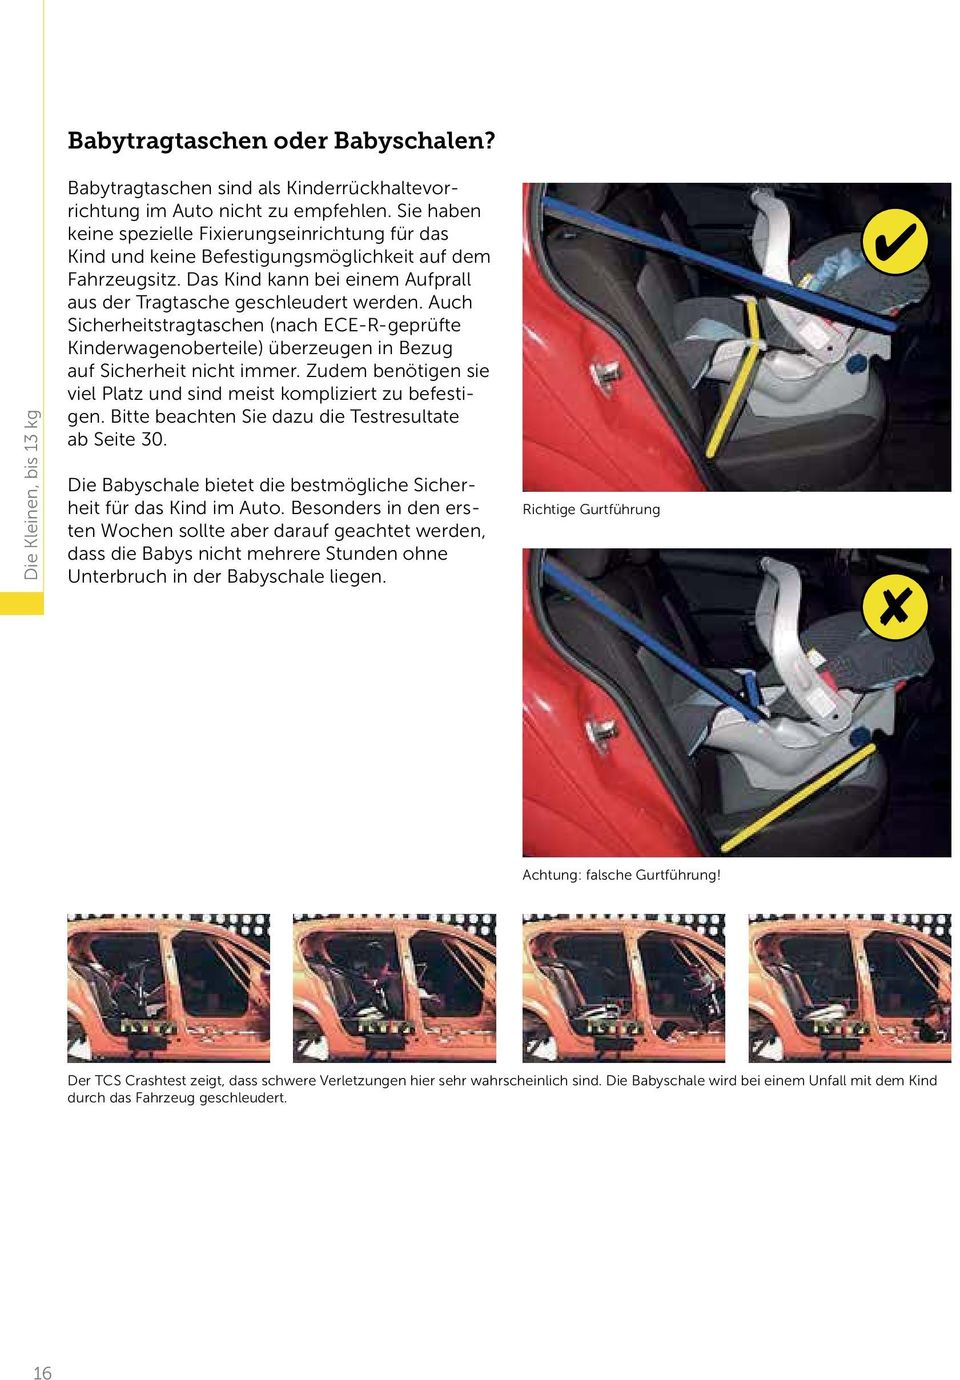 Auch Sicherheitstragtaschen (nach ECE-R-geprüfte Kinderwagen oberteile) überzeugen in Bezug auf Sicherheit nicht immer. Zudem benötigen sie viel Platz und sind meist kompliziert zu befestigen.